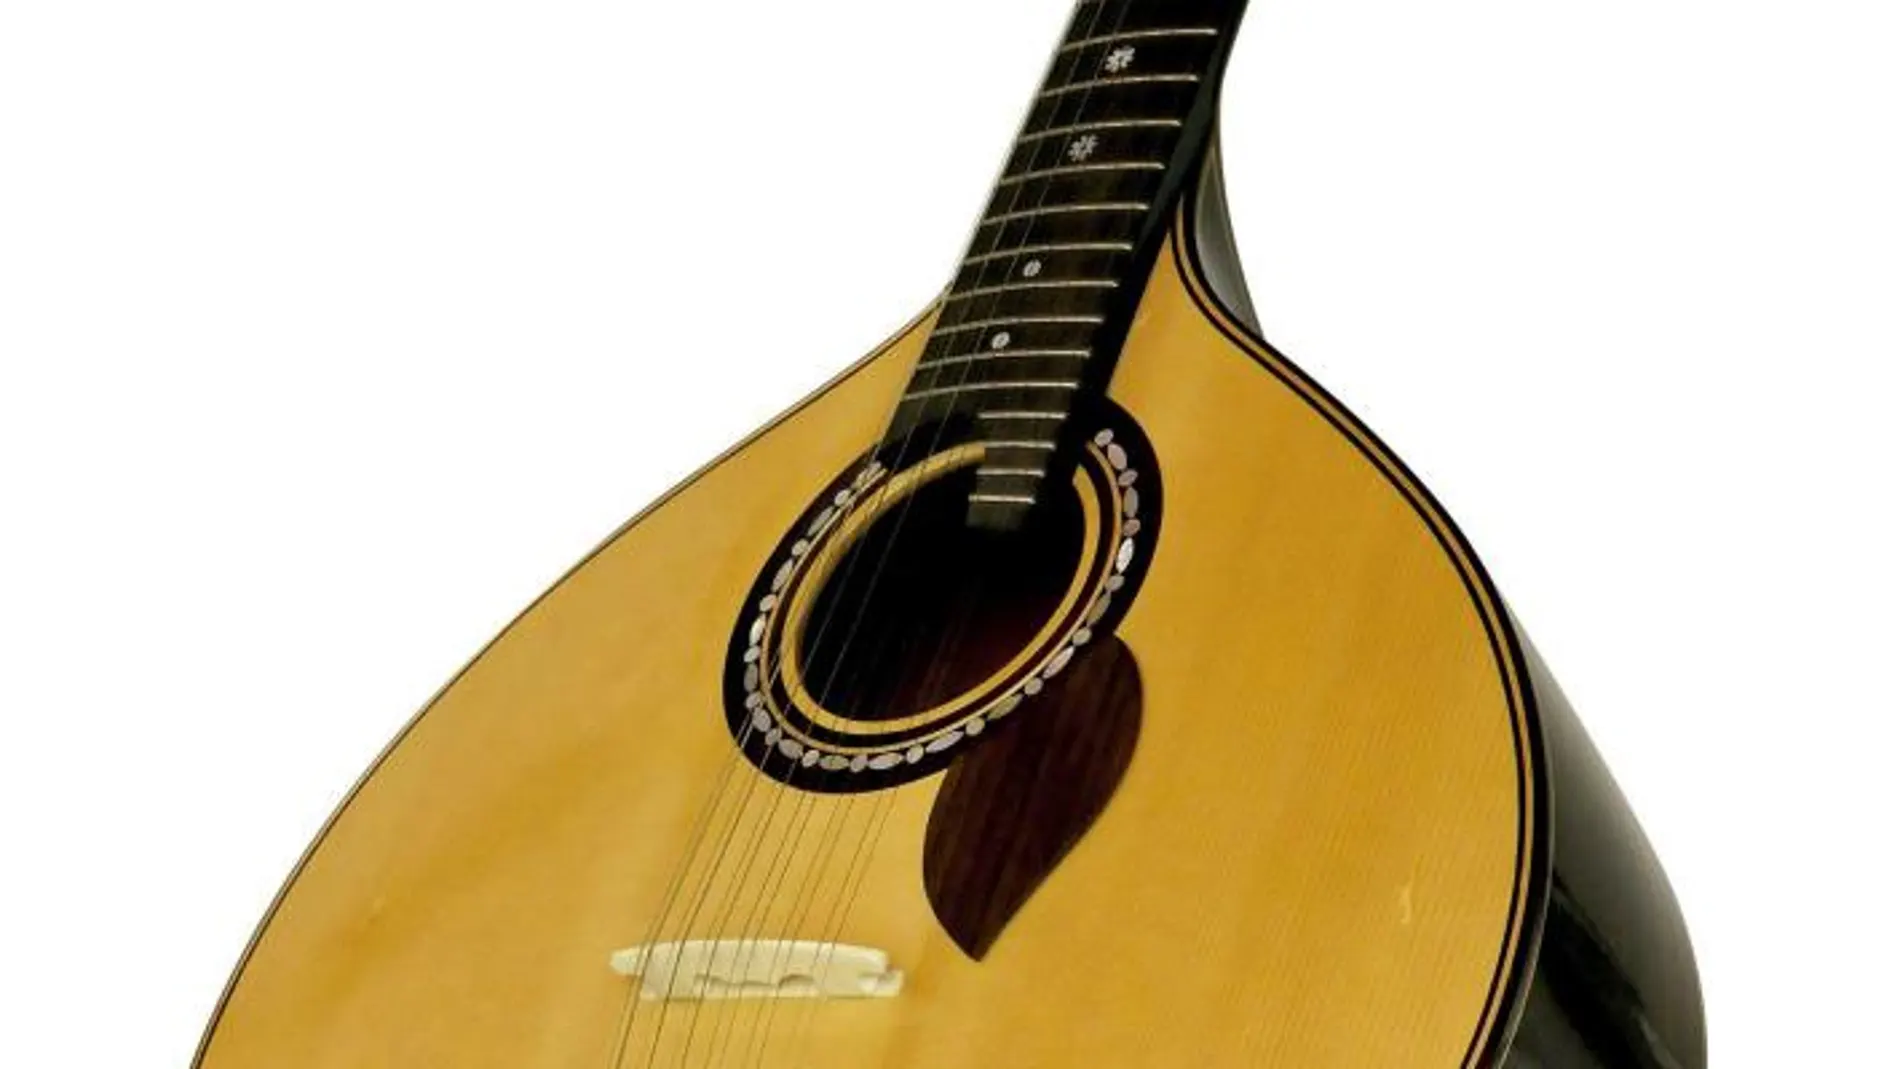 Fotografía facilitada por el Museu do Fado de Lisboa que muestra una guitarra portuguesa, símbolo de la cultura lusitana y embajadora de Portugal en el extranjero.